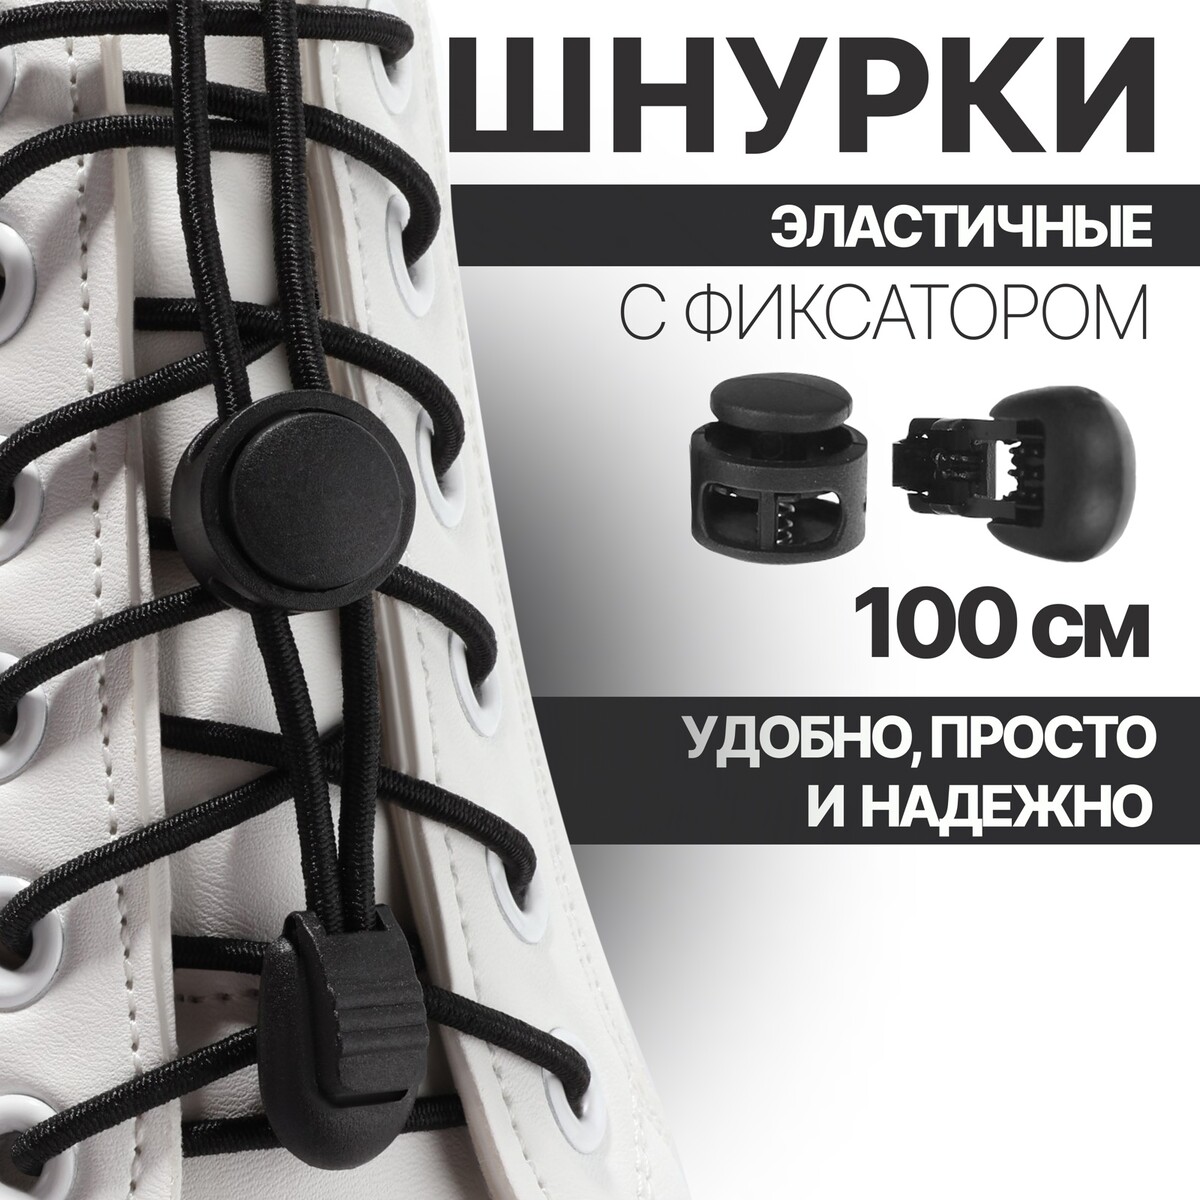 Шнурки для обуви, пара, круглые, с фиксатором, эластичные, d = 3 мм, 100 см, цвет черный